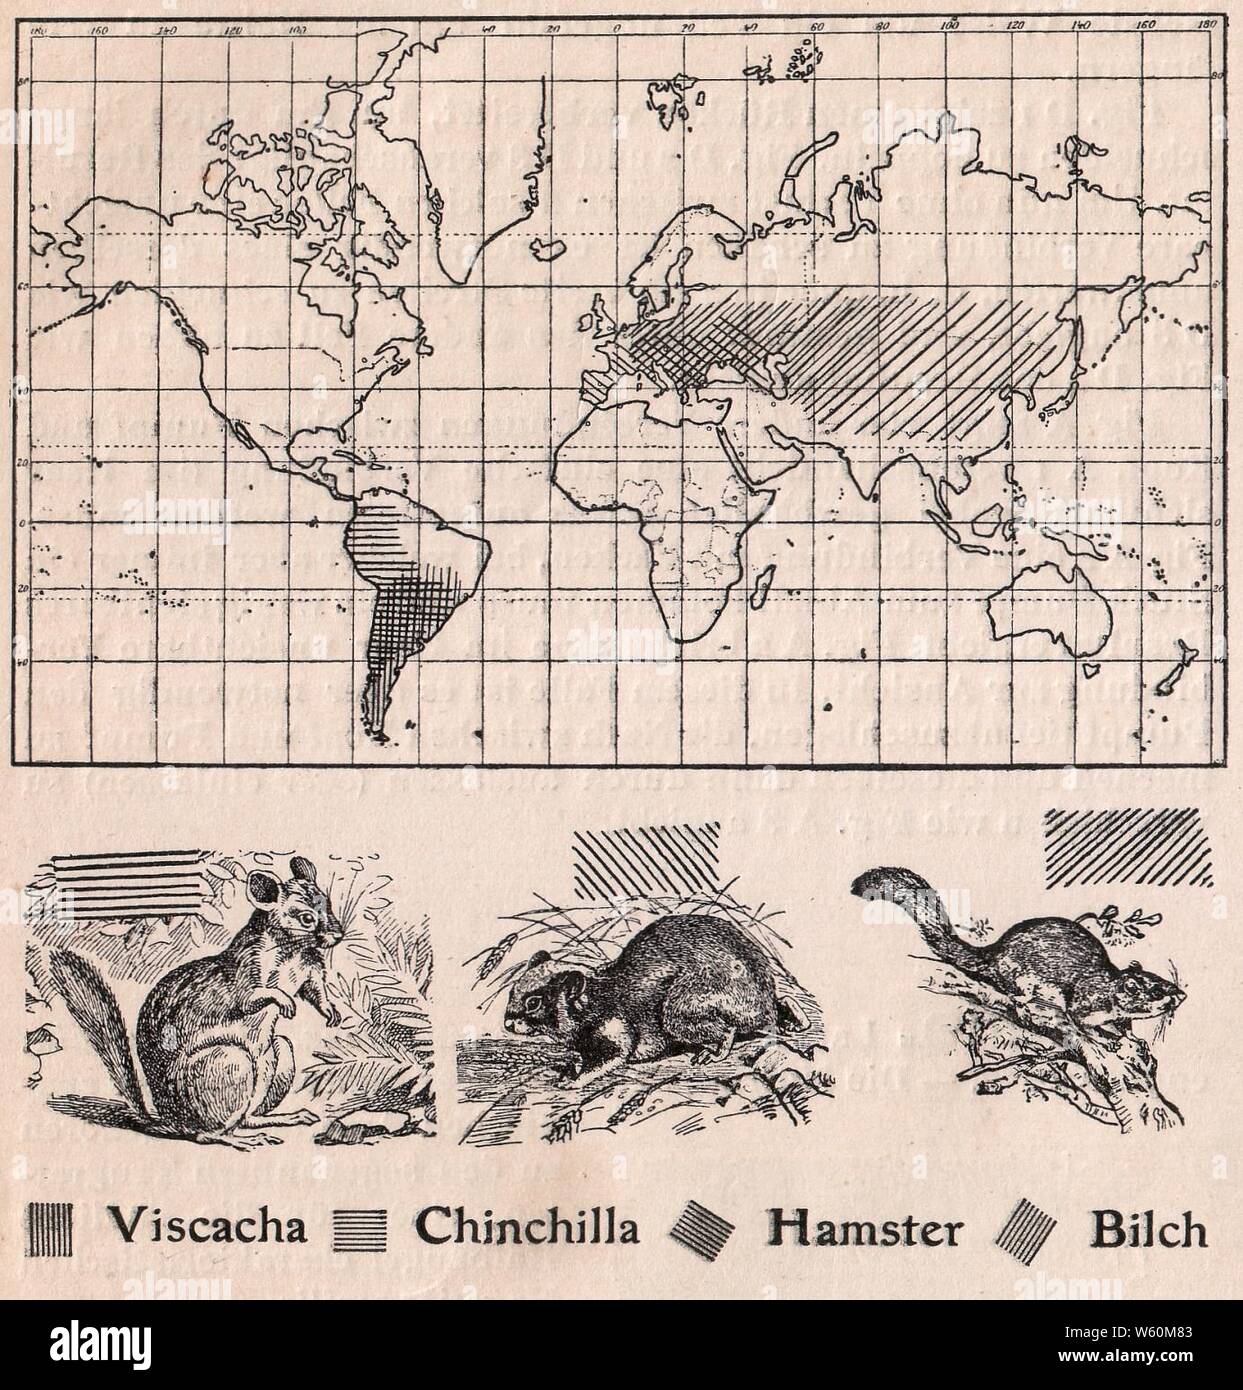 Das kürschner-handwerk, II. Auflage 3. 2008, S. 60, Weltkarte Verbreitung der Viscacha, Chinchilla, Hamster und Bilch (1910). Stockfoto